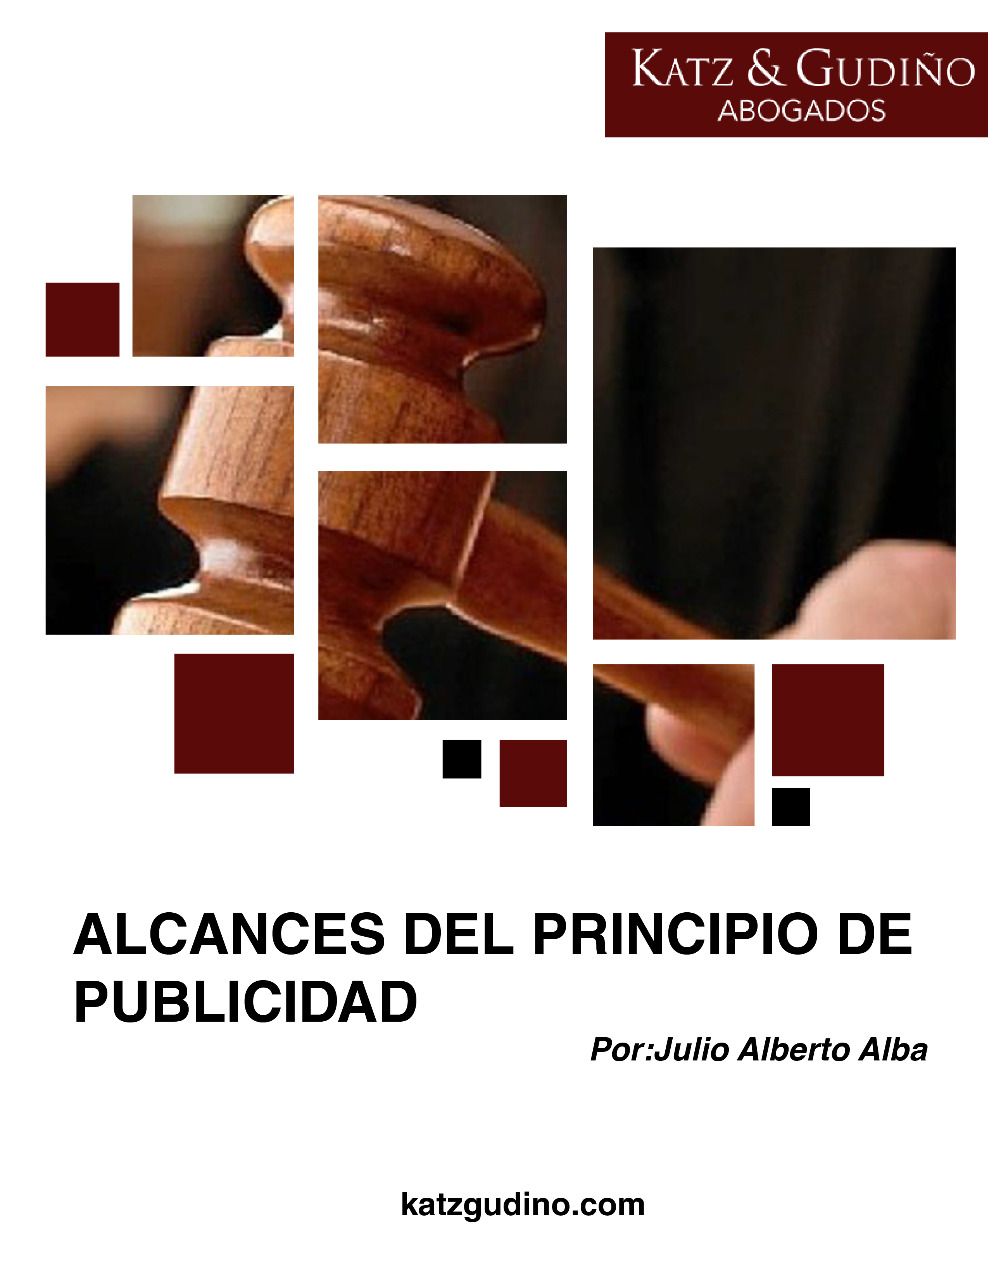 “ALCANCES DEL PRINCIPIO DE PUBLICIDAD”